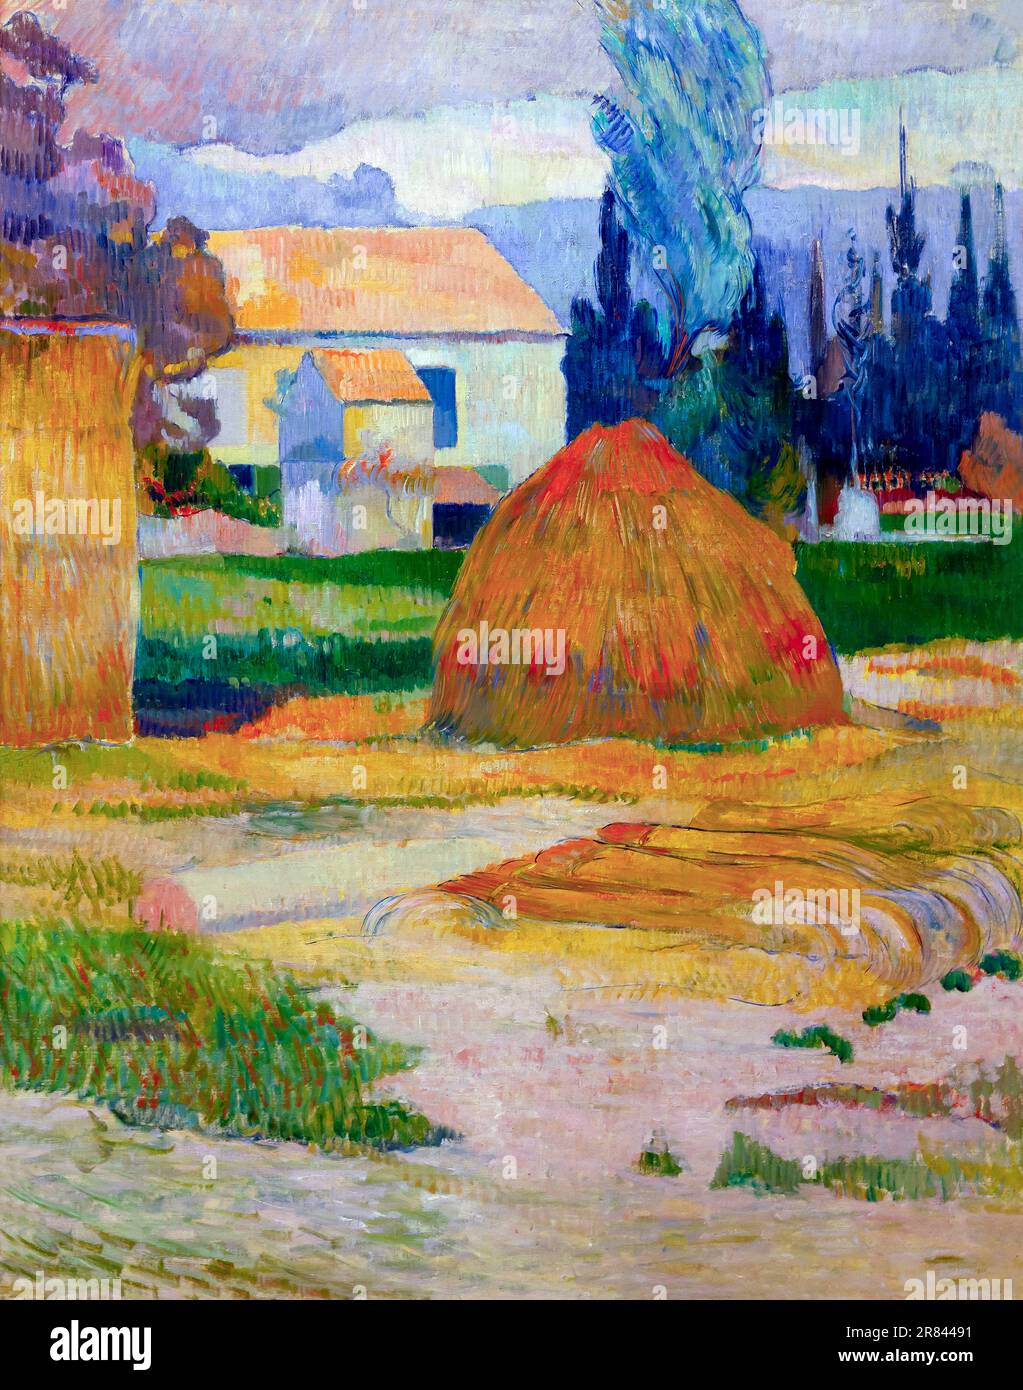 Paysage près d'Arles, Paul Gauguin, 1888, Indianapolis Museum of Art, Indianapolis, Indiana, USA, Amérique du Nord Banque D'Images